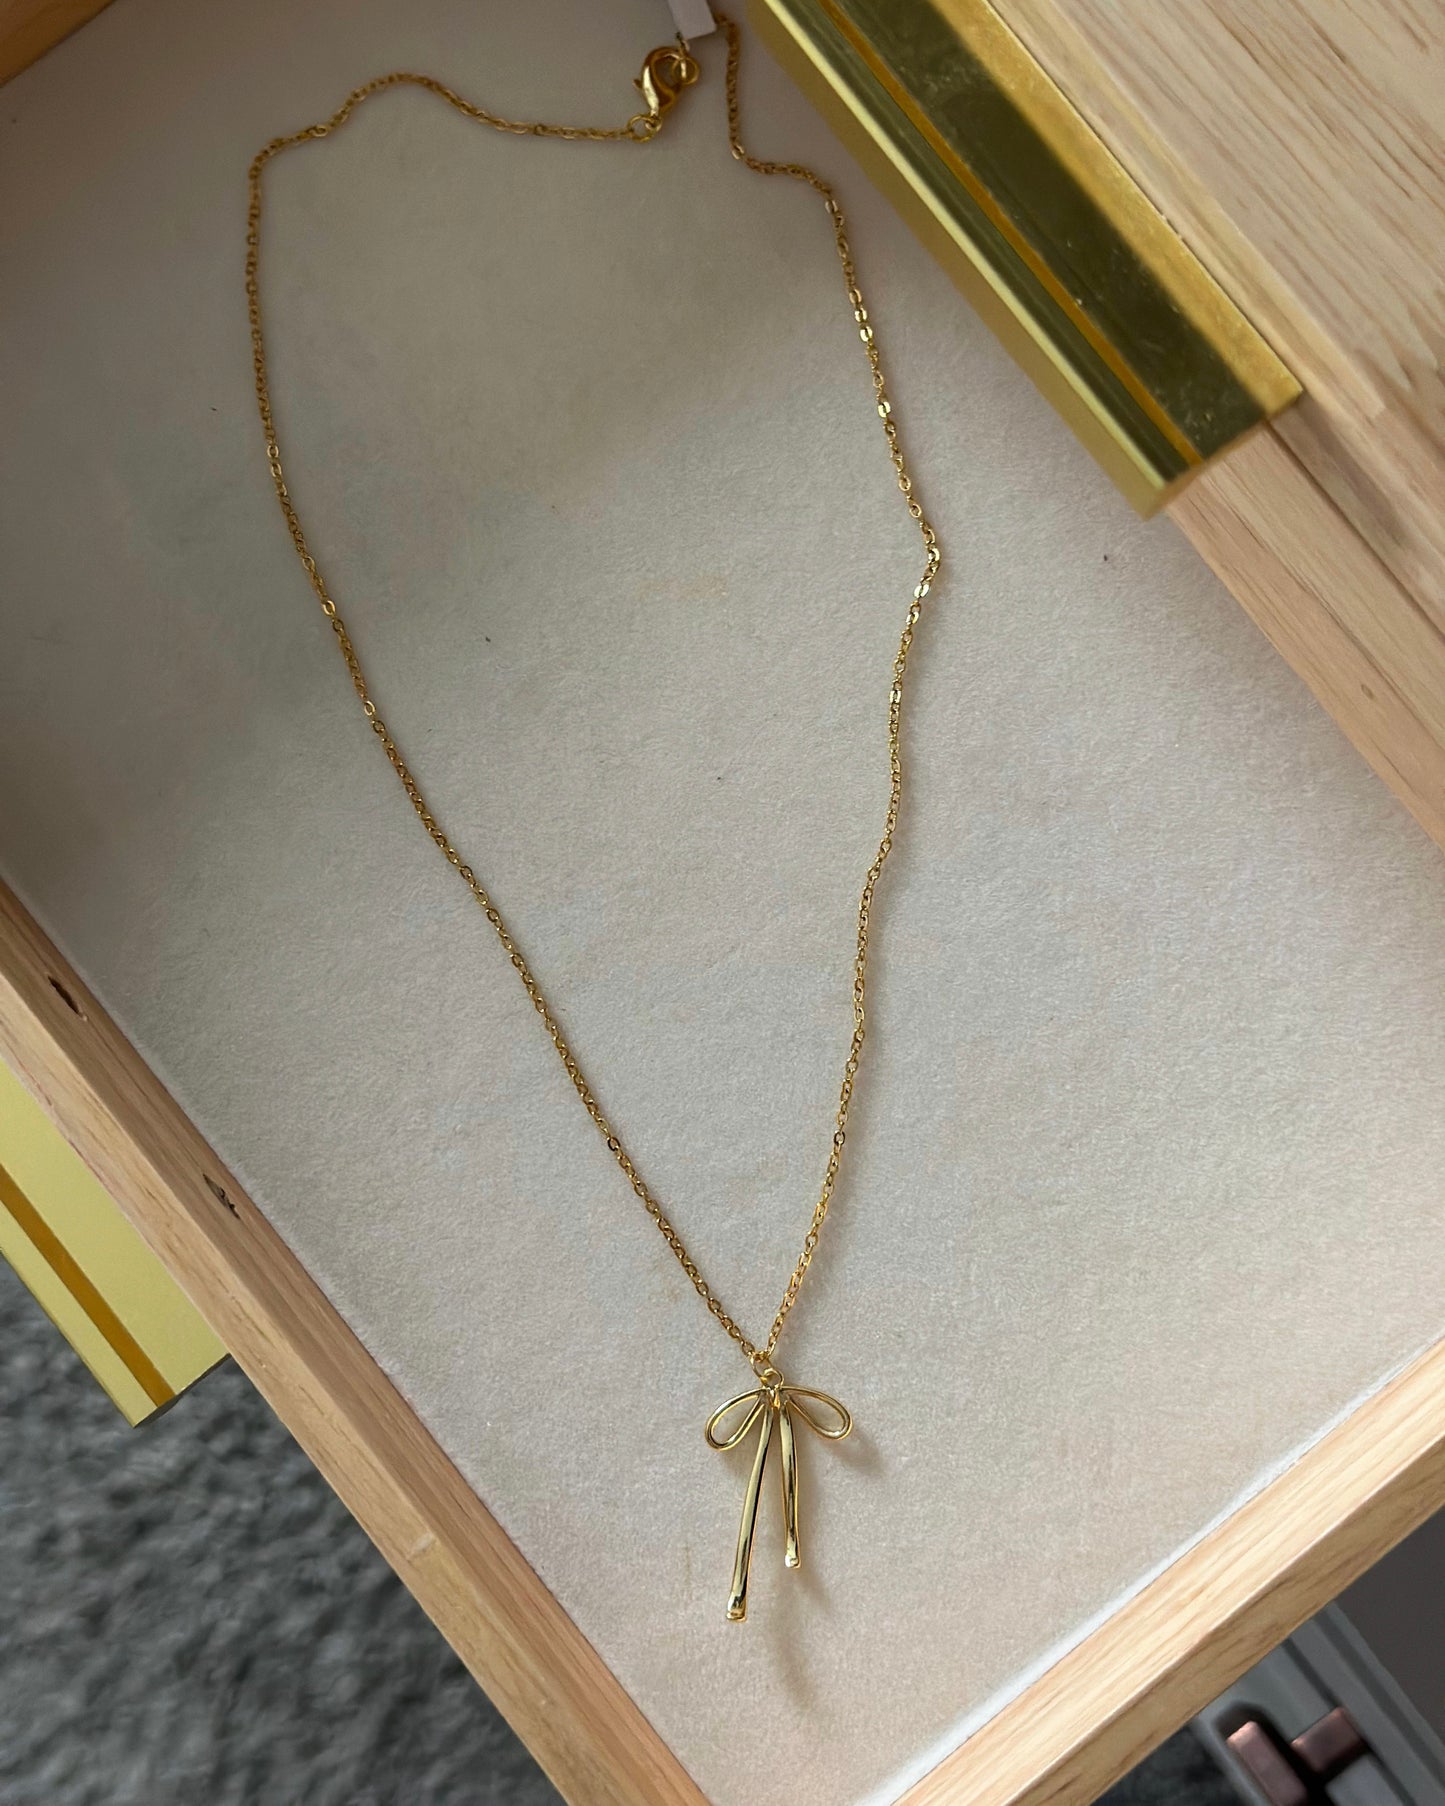 Georgia Necklace